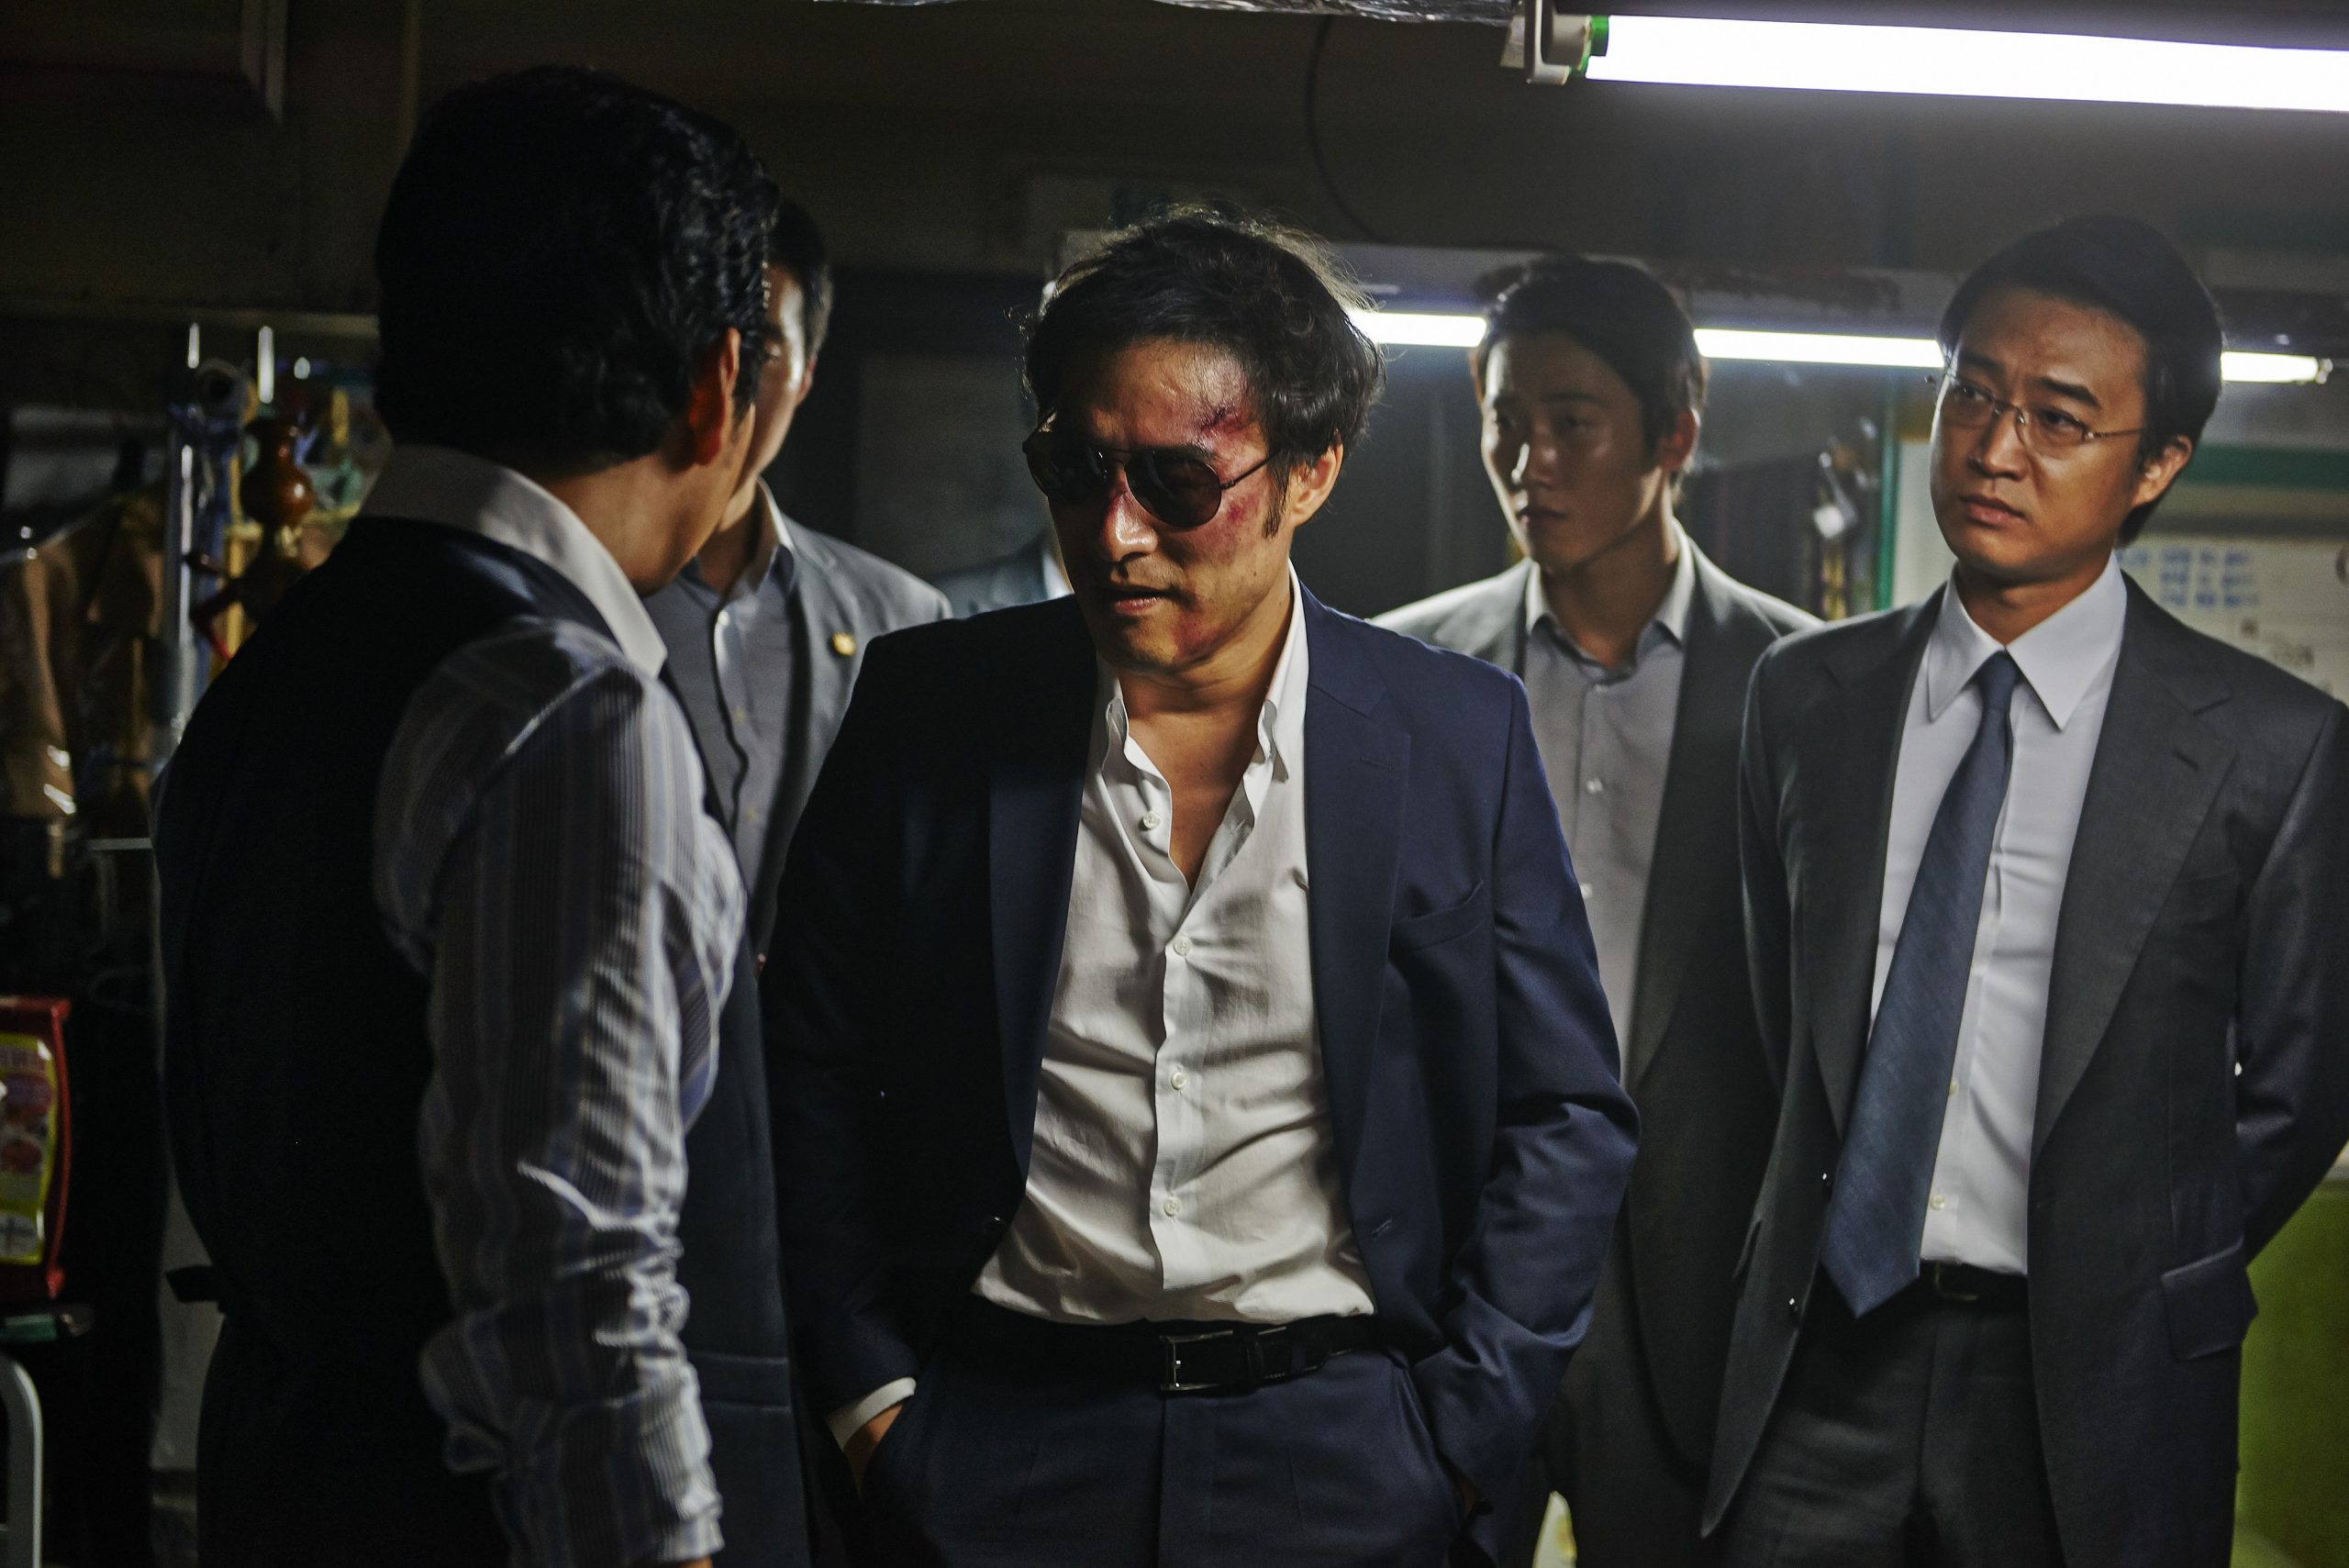 Detektiv kinolar. Инсайдеры 2015. Инсайдеры / Naeboojadeul / inside men (2015). Инсайдеры Корея.